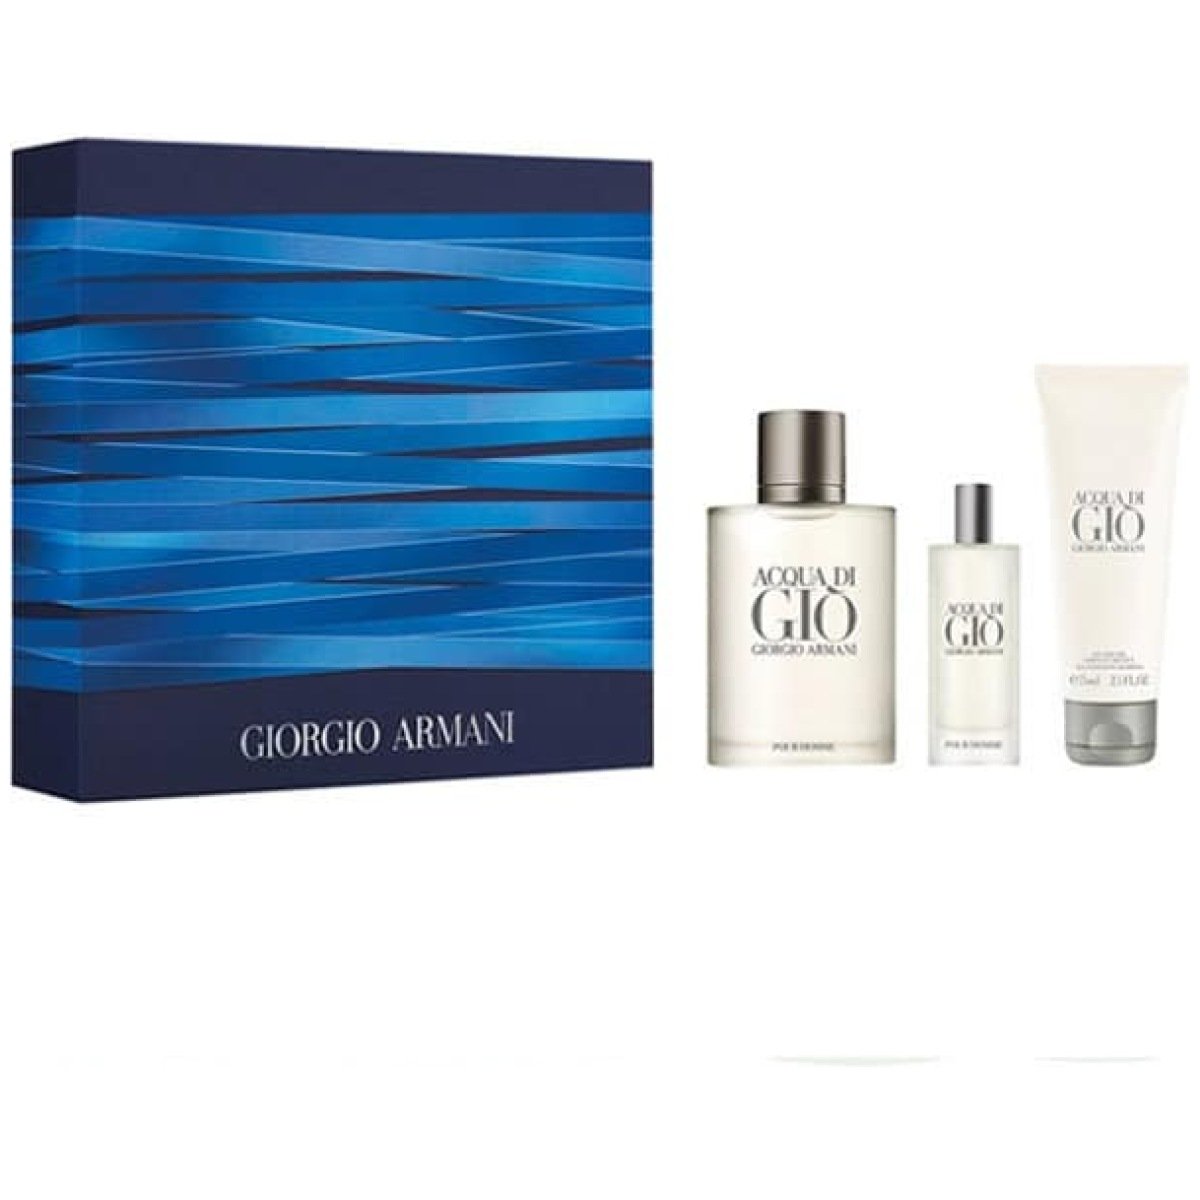 Giorgio Armani Acqua Di Gio EDT Gift Set For Him 100 ml Spray+75 ml